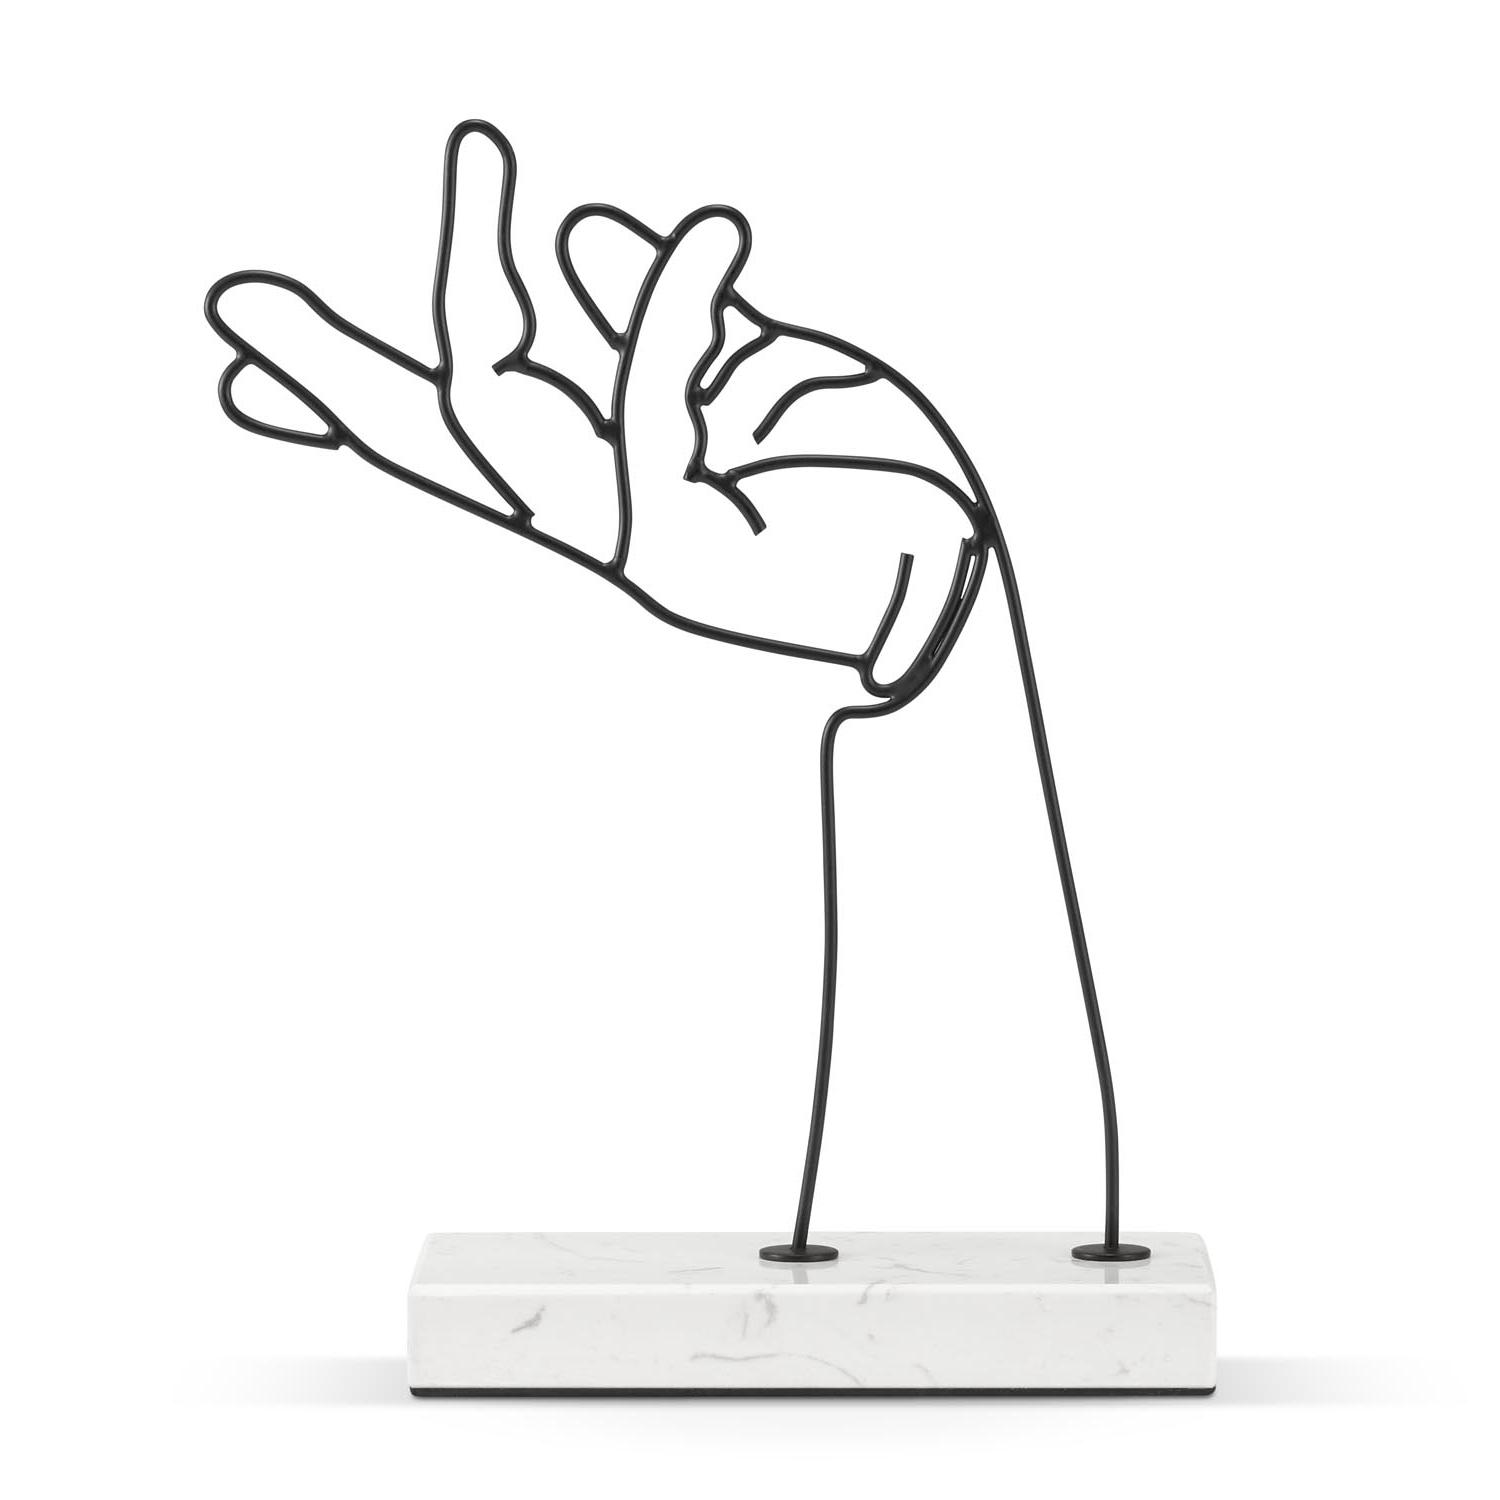 HAND - dekoracja stojąca ręki z czarnego druciku na białej marmurowej podstawce 